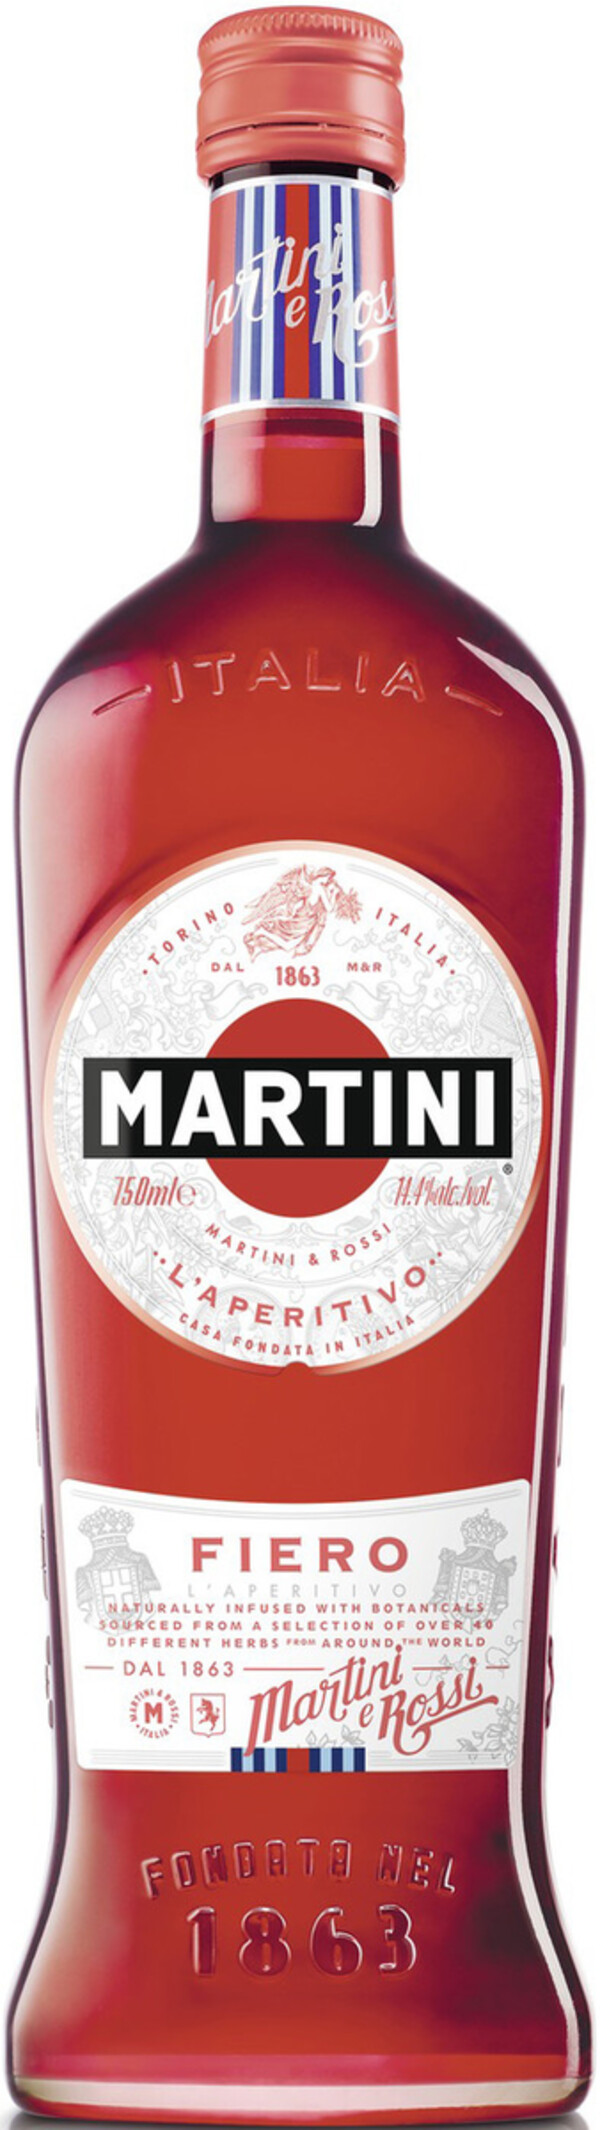 Martini Fiero 0,75 ltr